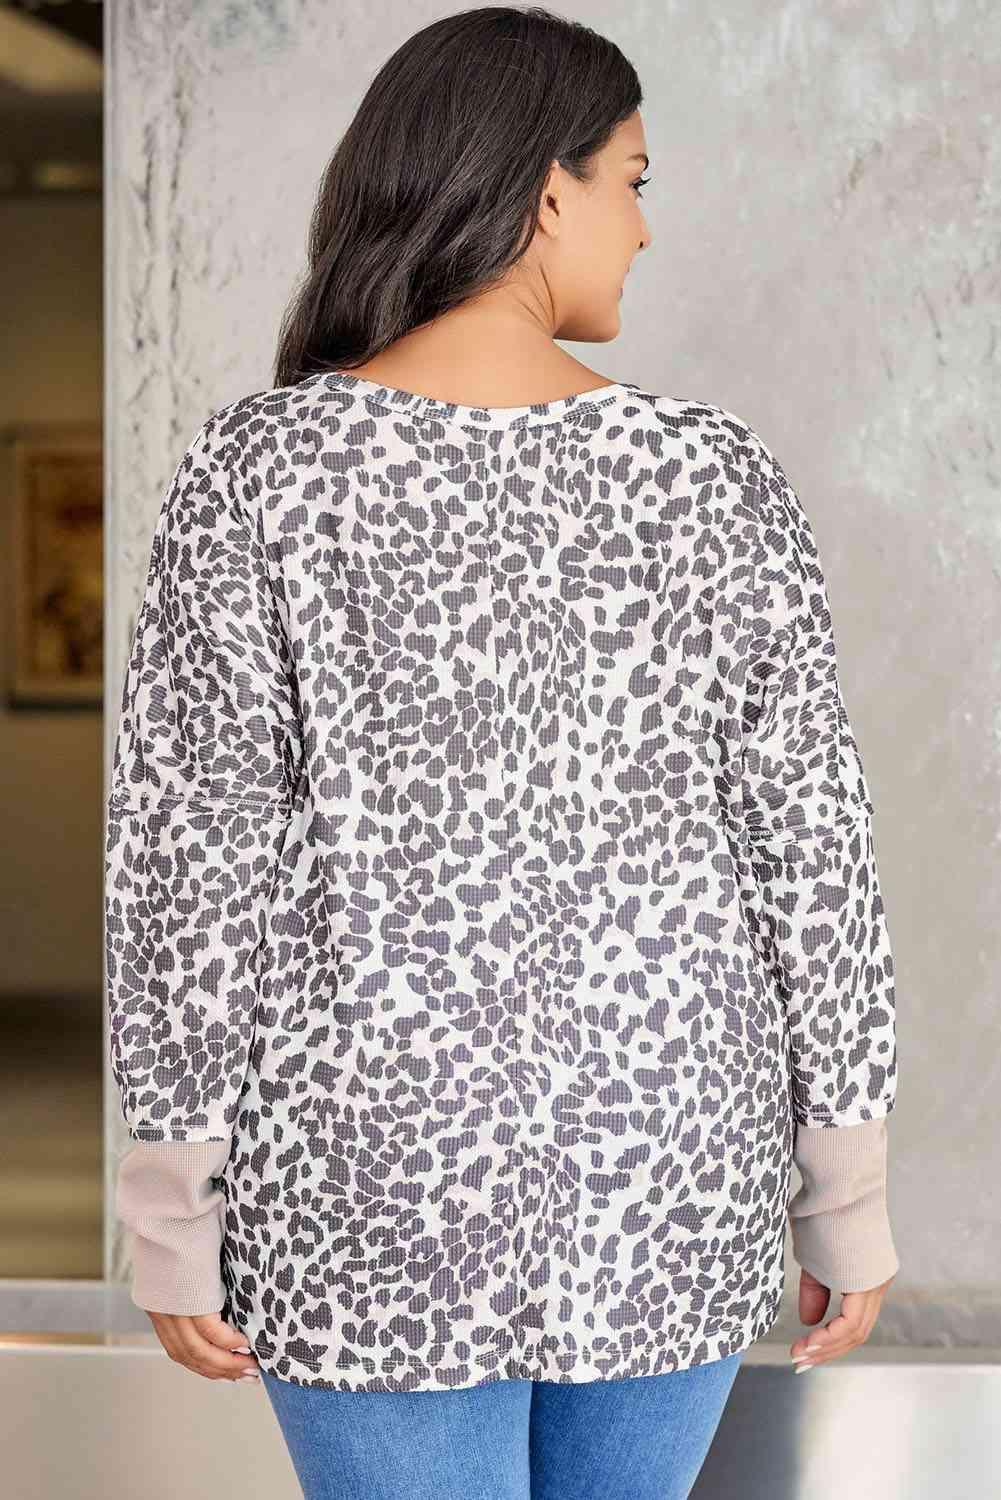 Get Ahead Long Sleeve Plus Size Leopard Sweatshirt - MXSTUDIO.COM